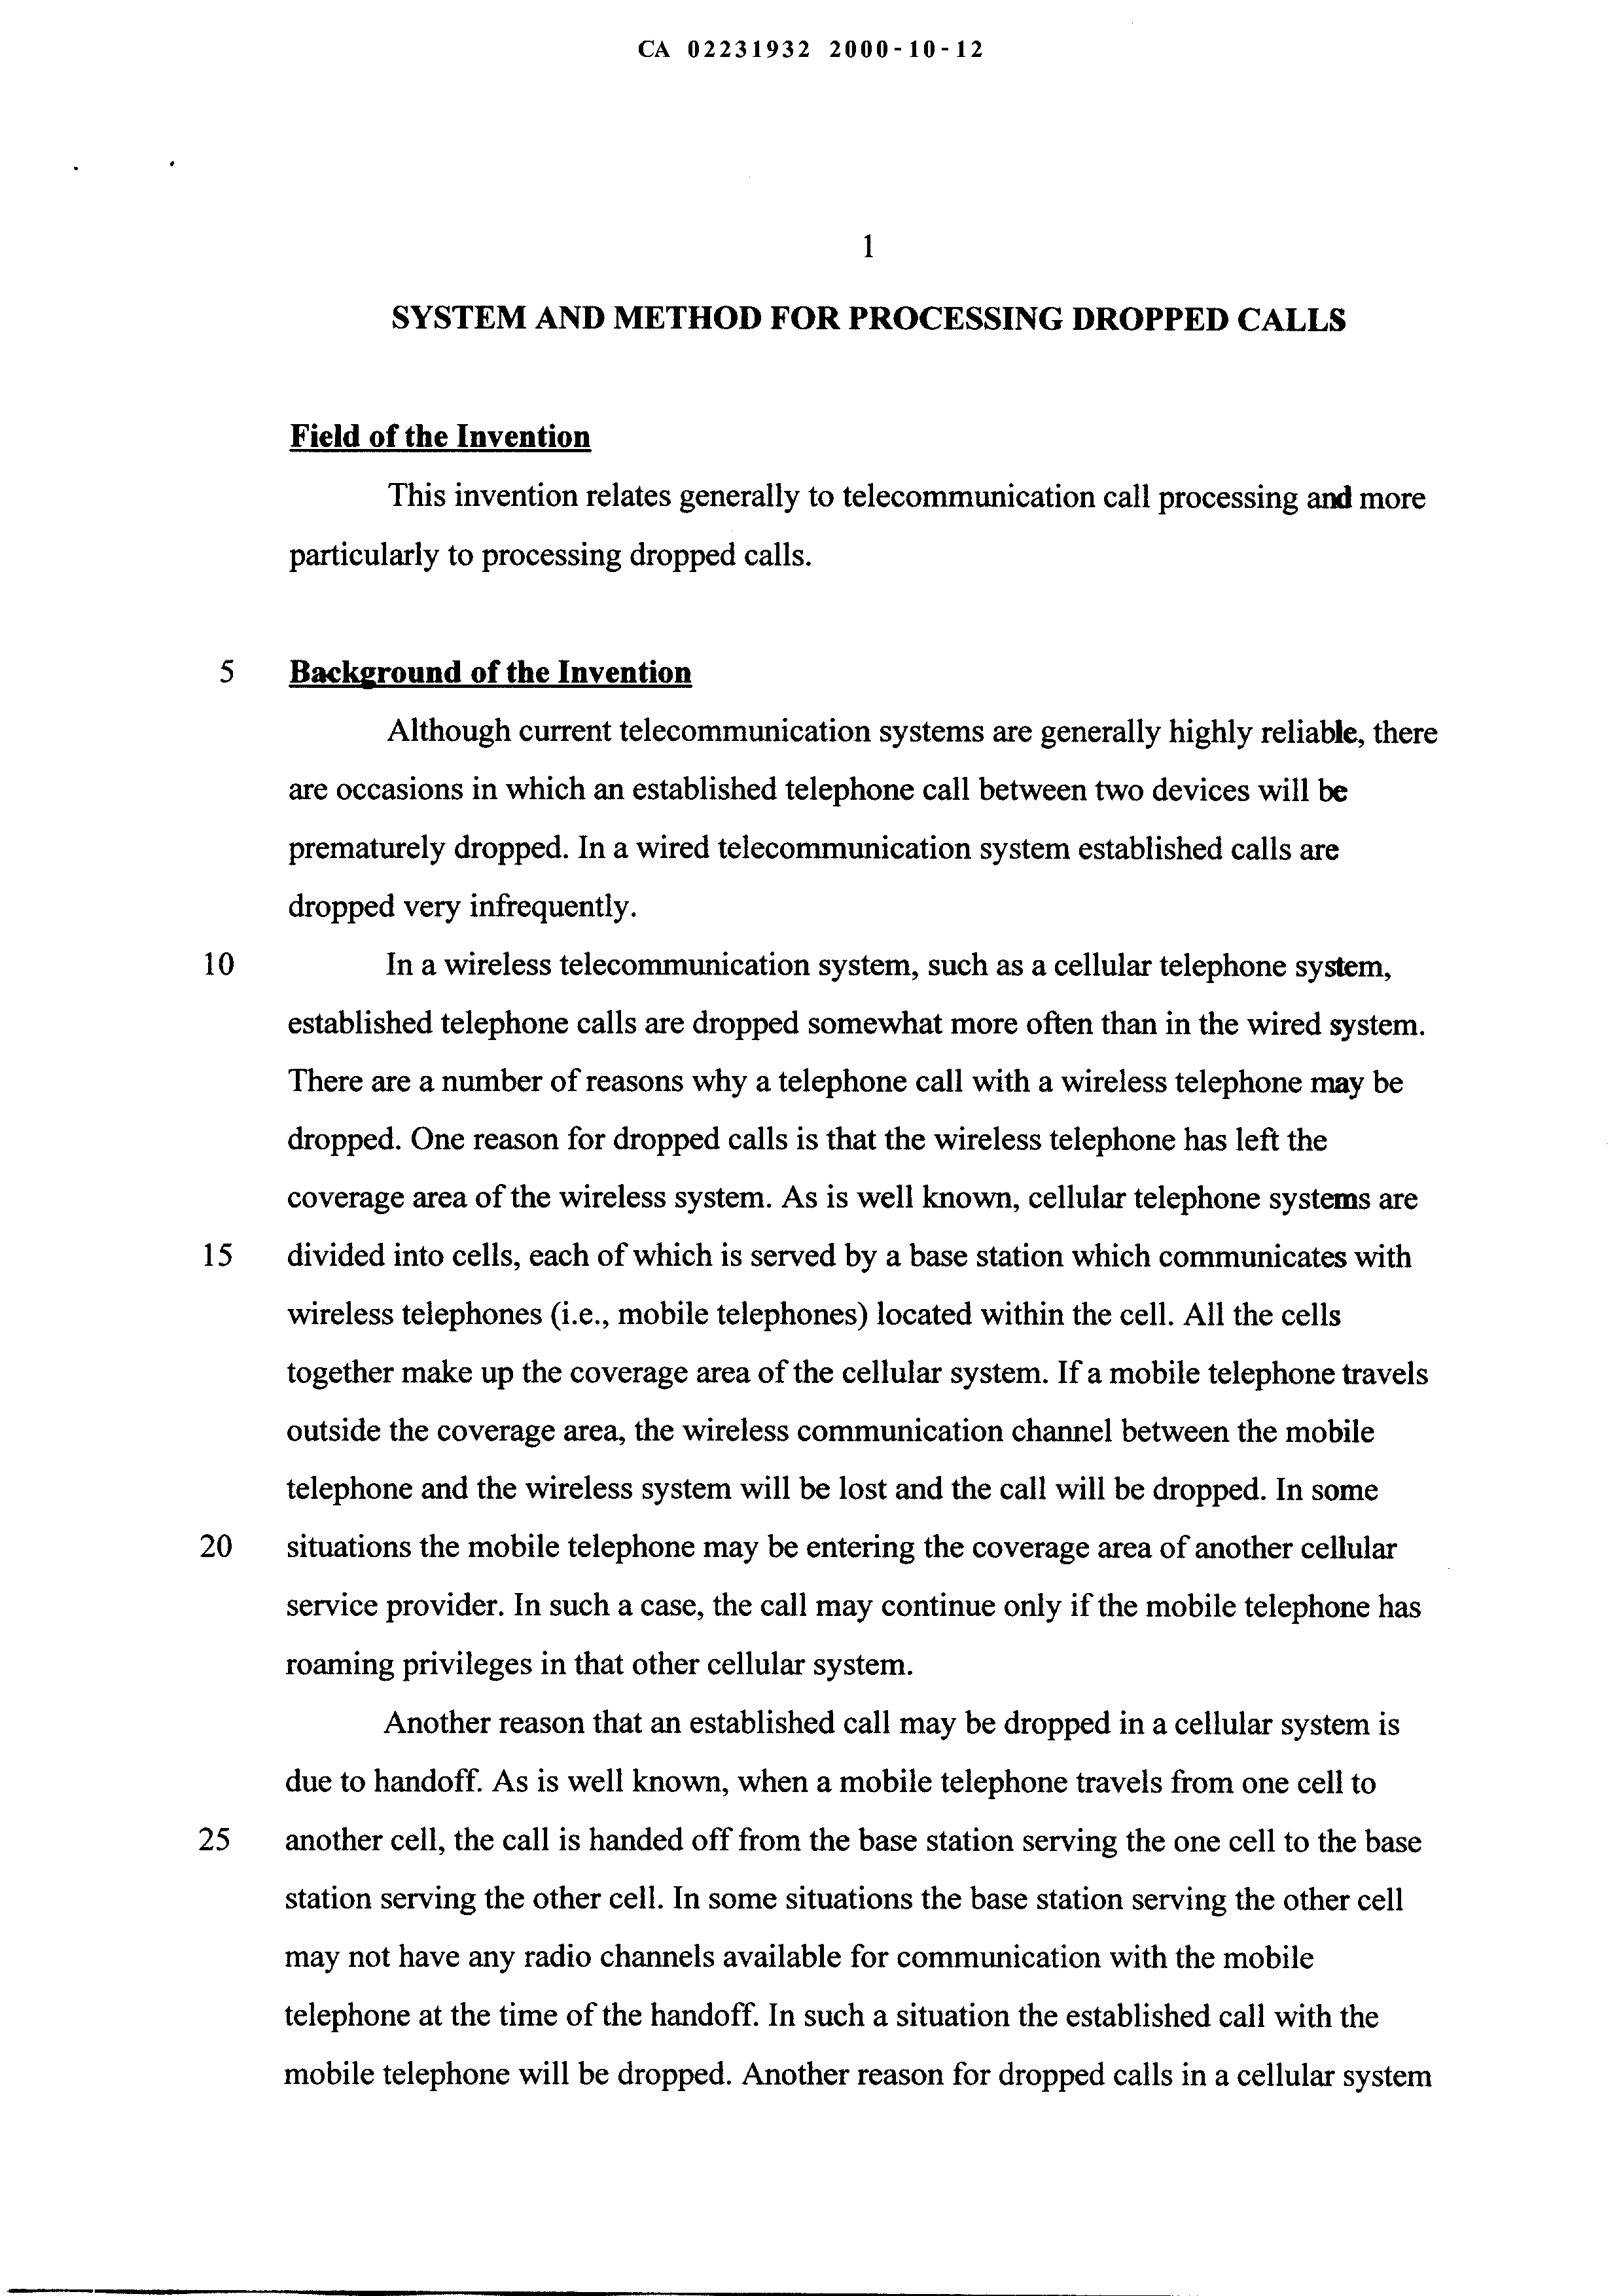 Canadian Patent Document 2231932. Description 19991212. Image 1 of 11